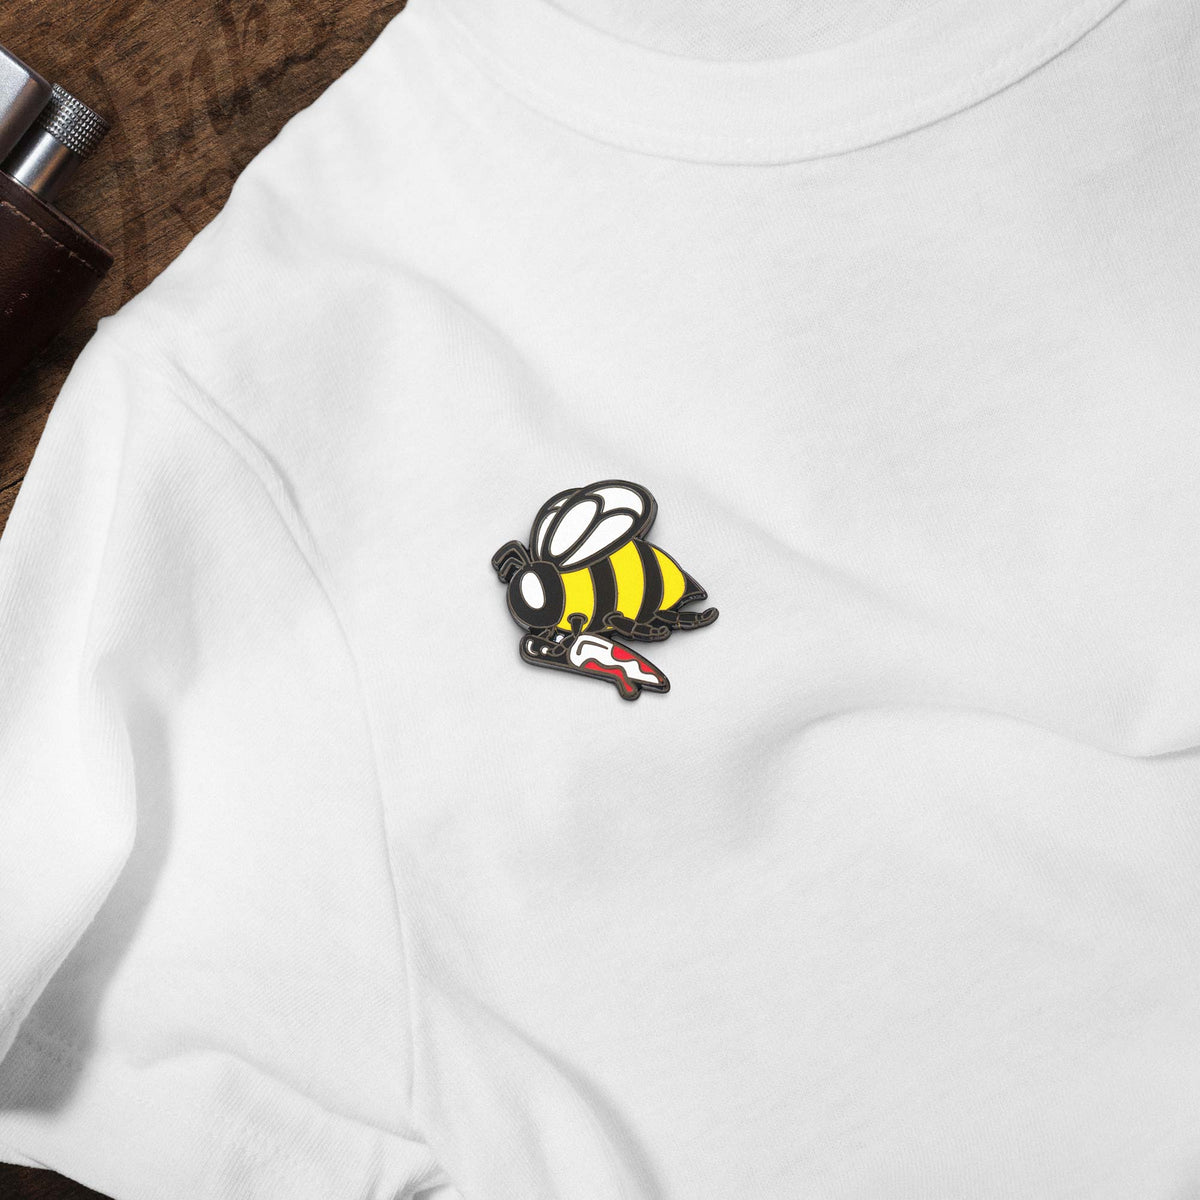 Busy Little Killer Bee Holding Knife hard enamel pin on white t-shirt